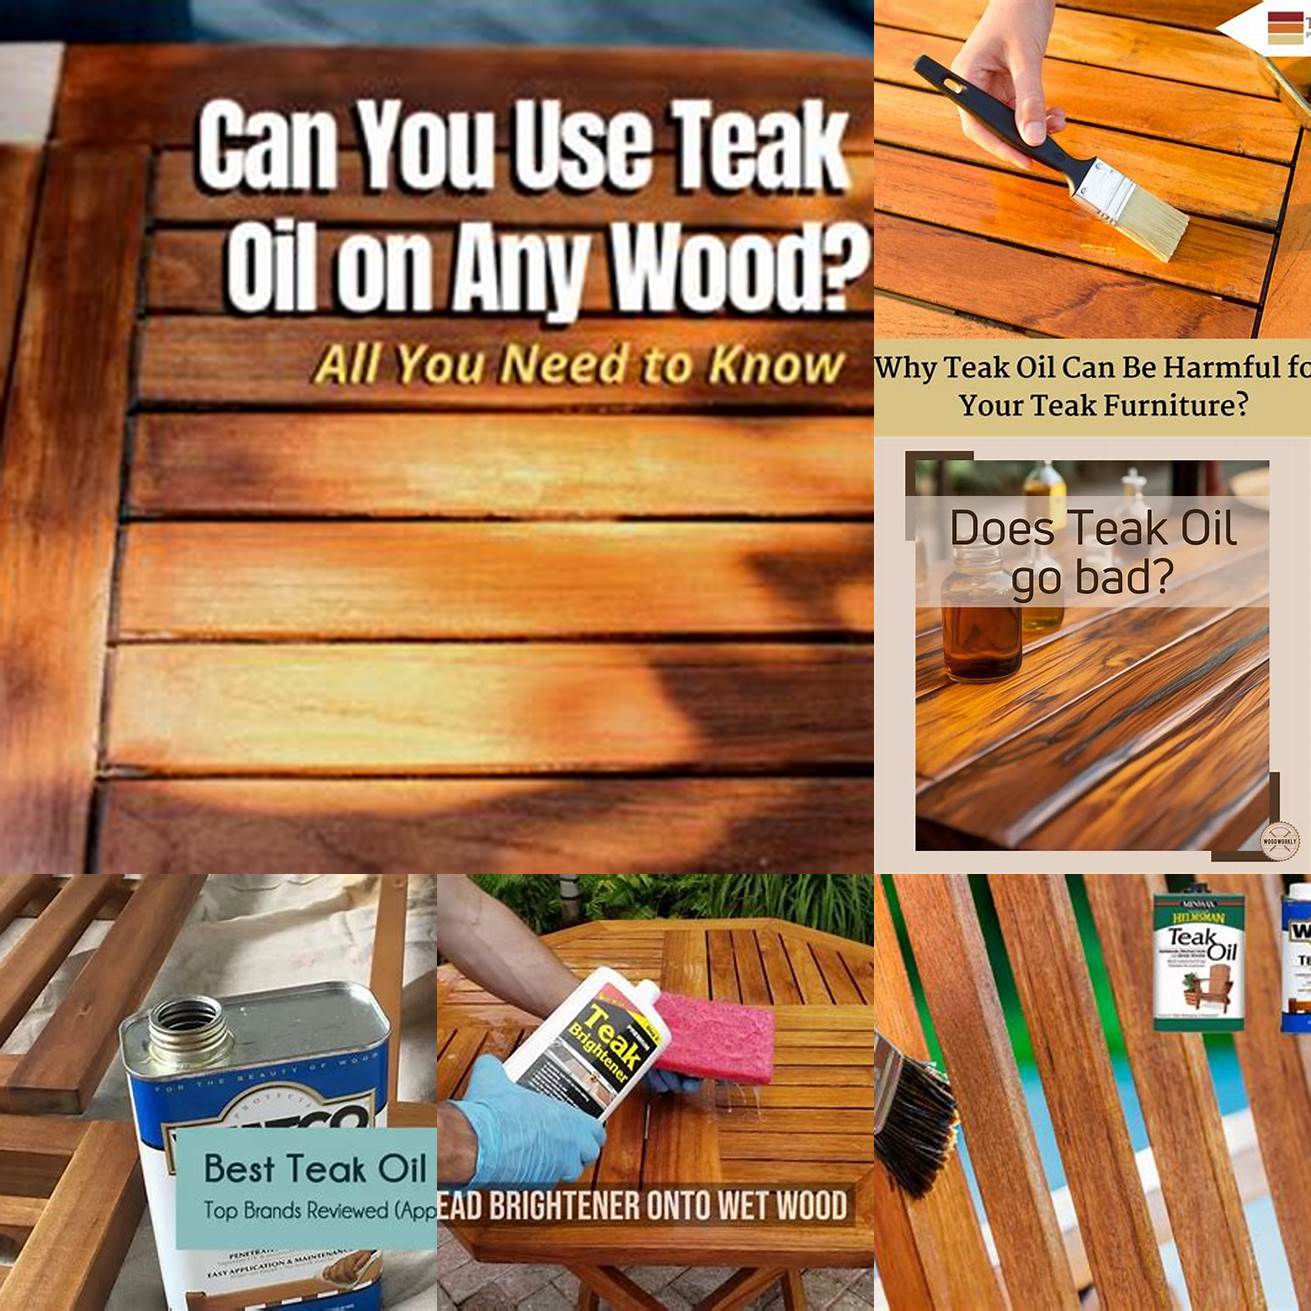 Avoid using teak oil on softwoods